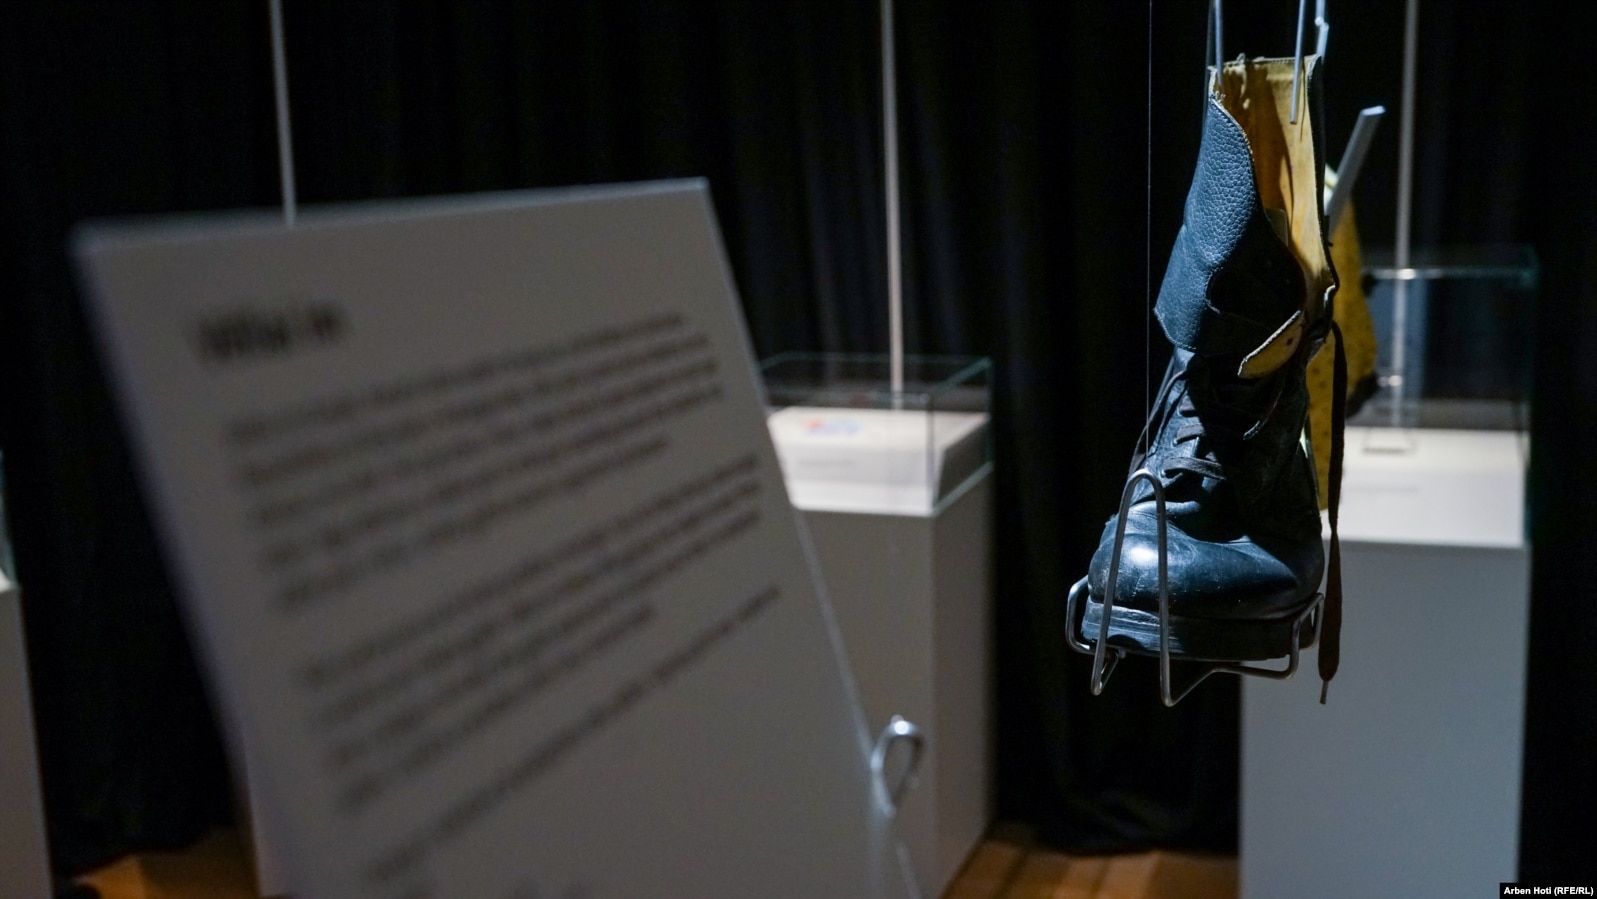 Një çizme që ka veshur Kenani, një 16-vjeçar nga Bosnje e Hercegovina, që ka mbetur i vrarë në luftë, së bashku me anëtarë të tjerë të familjes. Rrëfimin për të e ka treguar vëllai i tij binjak, Kemali.